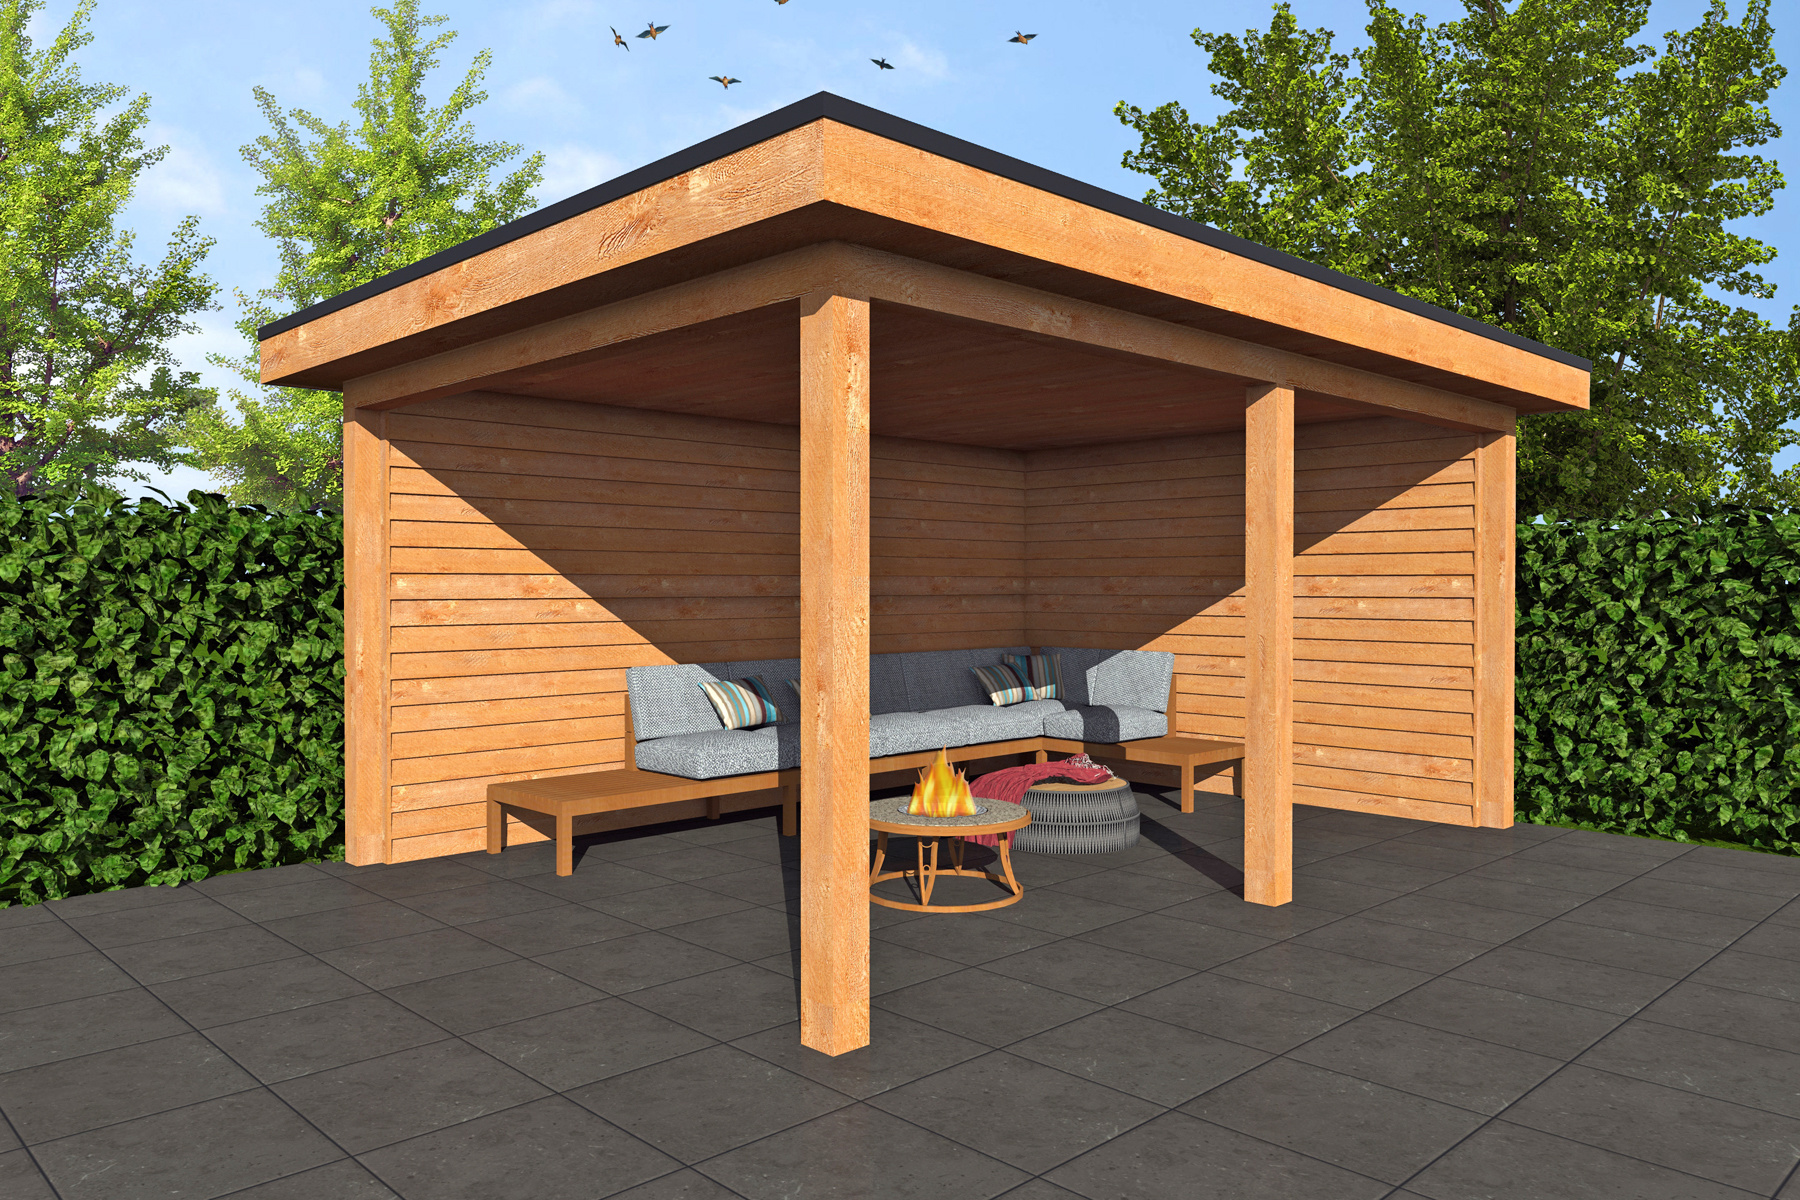 Houten veranda plat dak 250 x 400 cm | Gratis thuisbezorgd NL